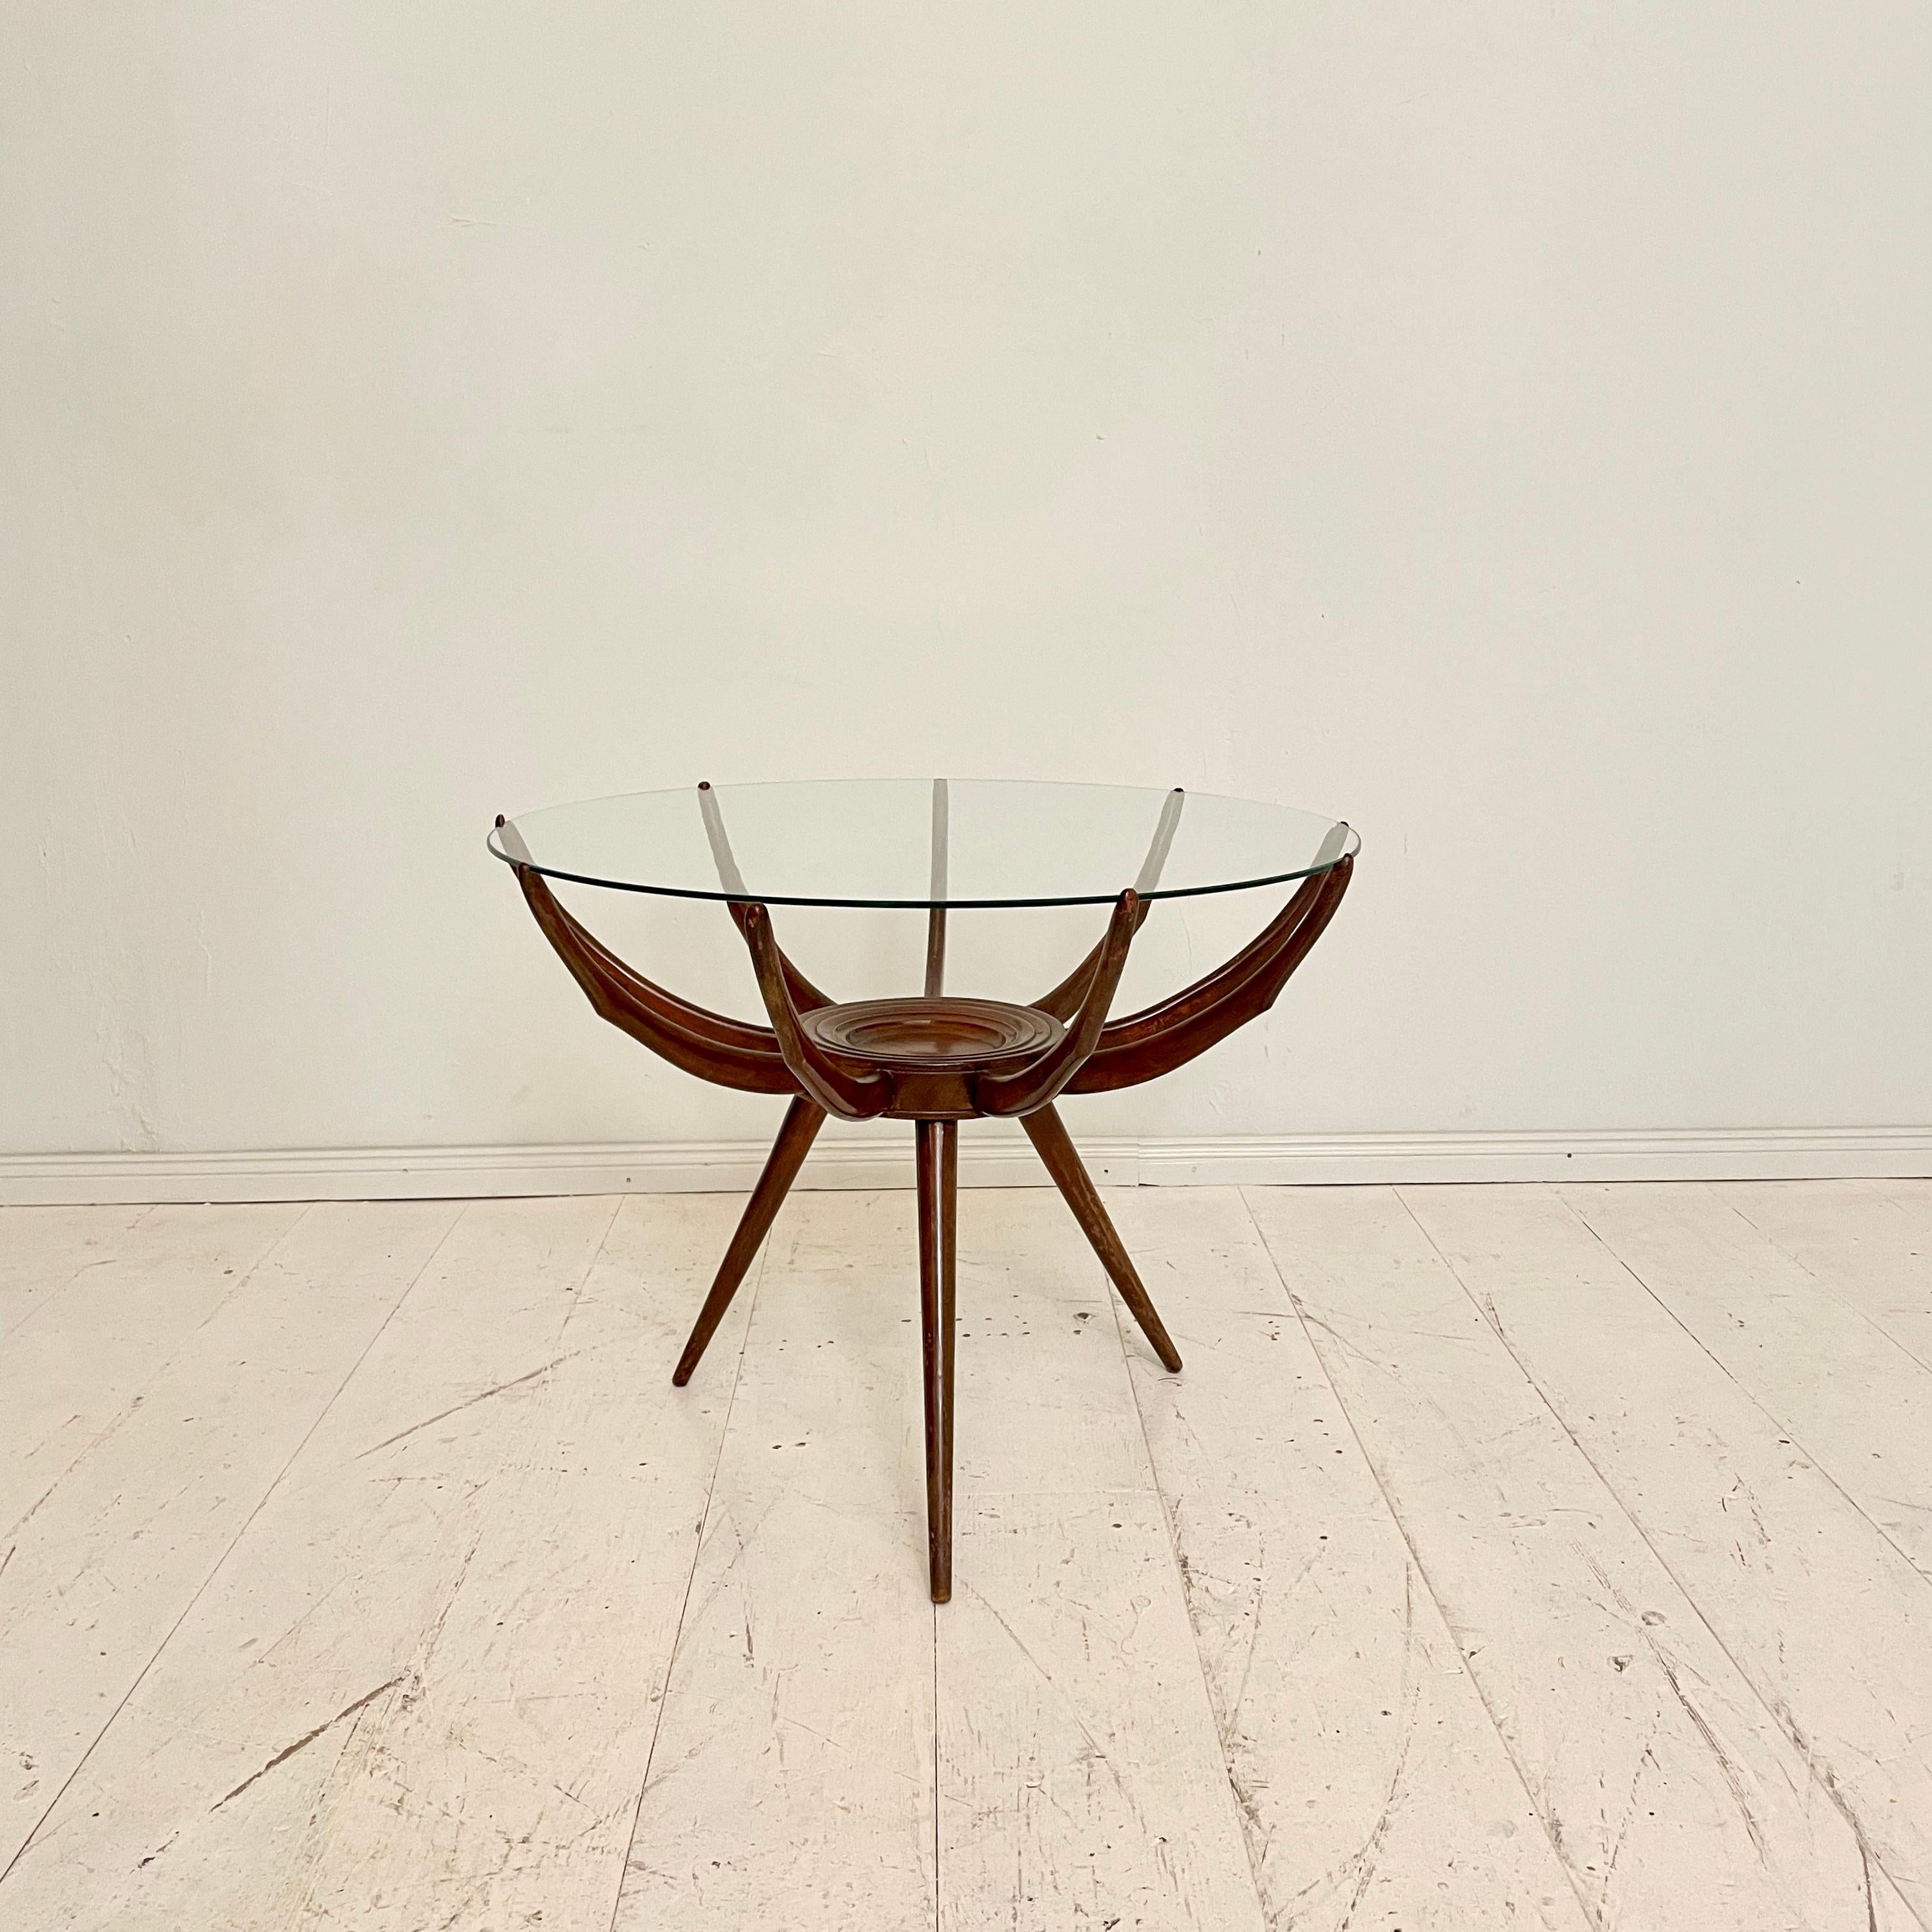 Cette magnifique table basse italienne du milieu du siècle dernier, réalisée par Carlo de Carli, a été fabriquée vers 1950.
La structure de la table rappelle les pieds insérés, d'où le nom de 